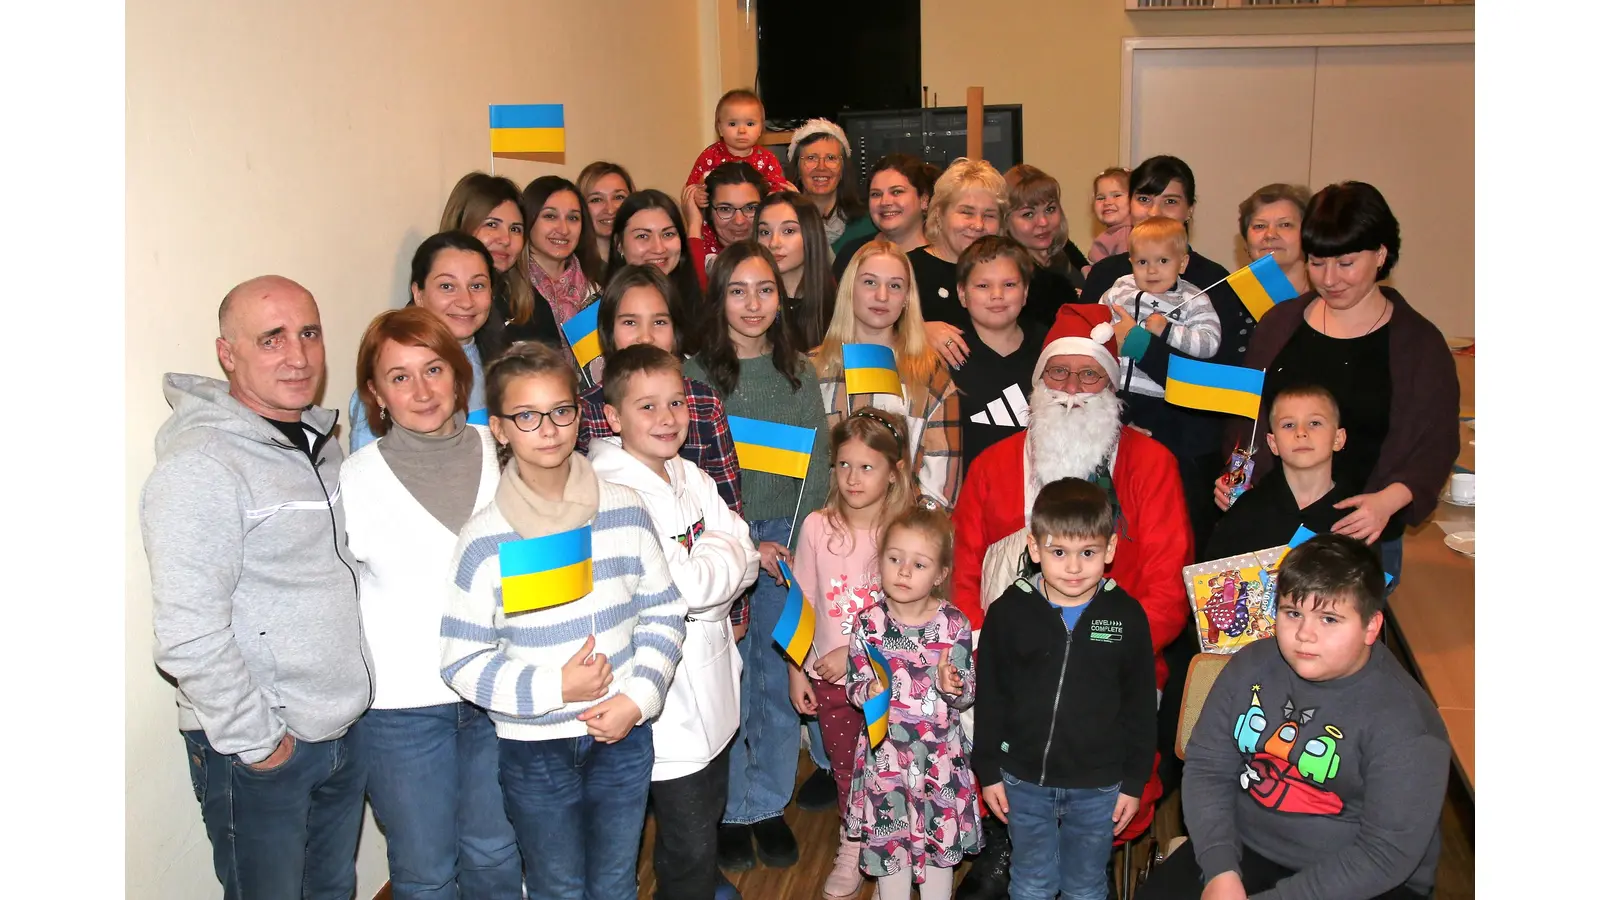 Eine von der Bürgerinitiative „SGR 4 Ukraine“ organisierte Weihnachtsfeier bietet Geflüchteten aus der Ukraine einige Stunden des Beisammenseins in gemütlicher Atmosphäre. (Foto: Borchers, Bastian)